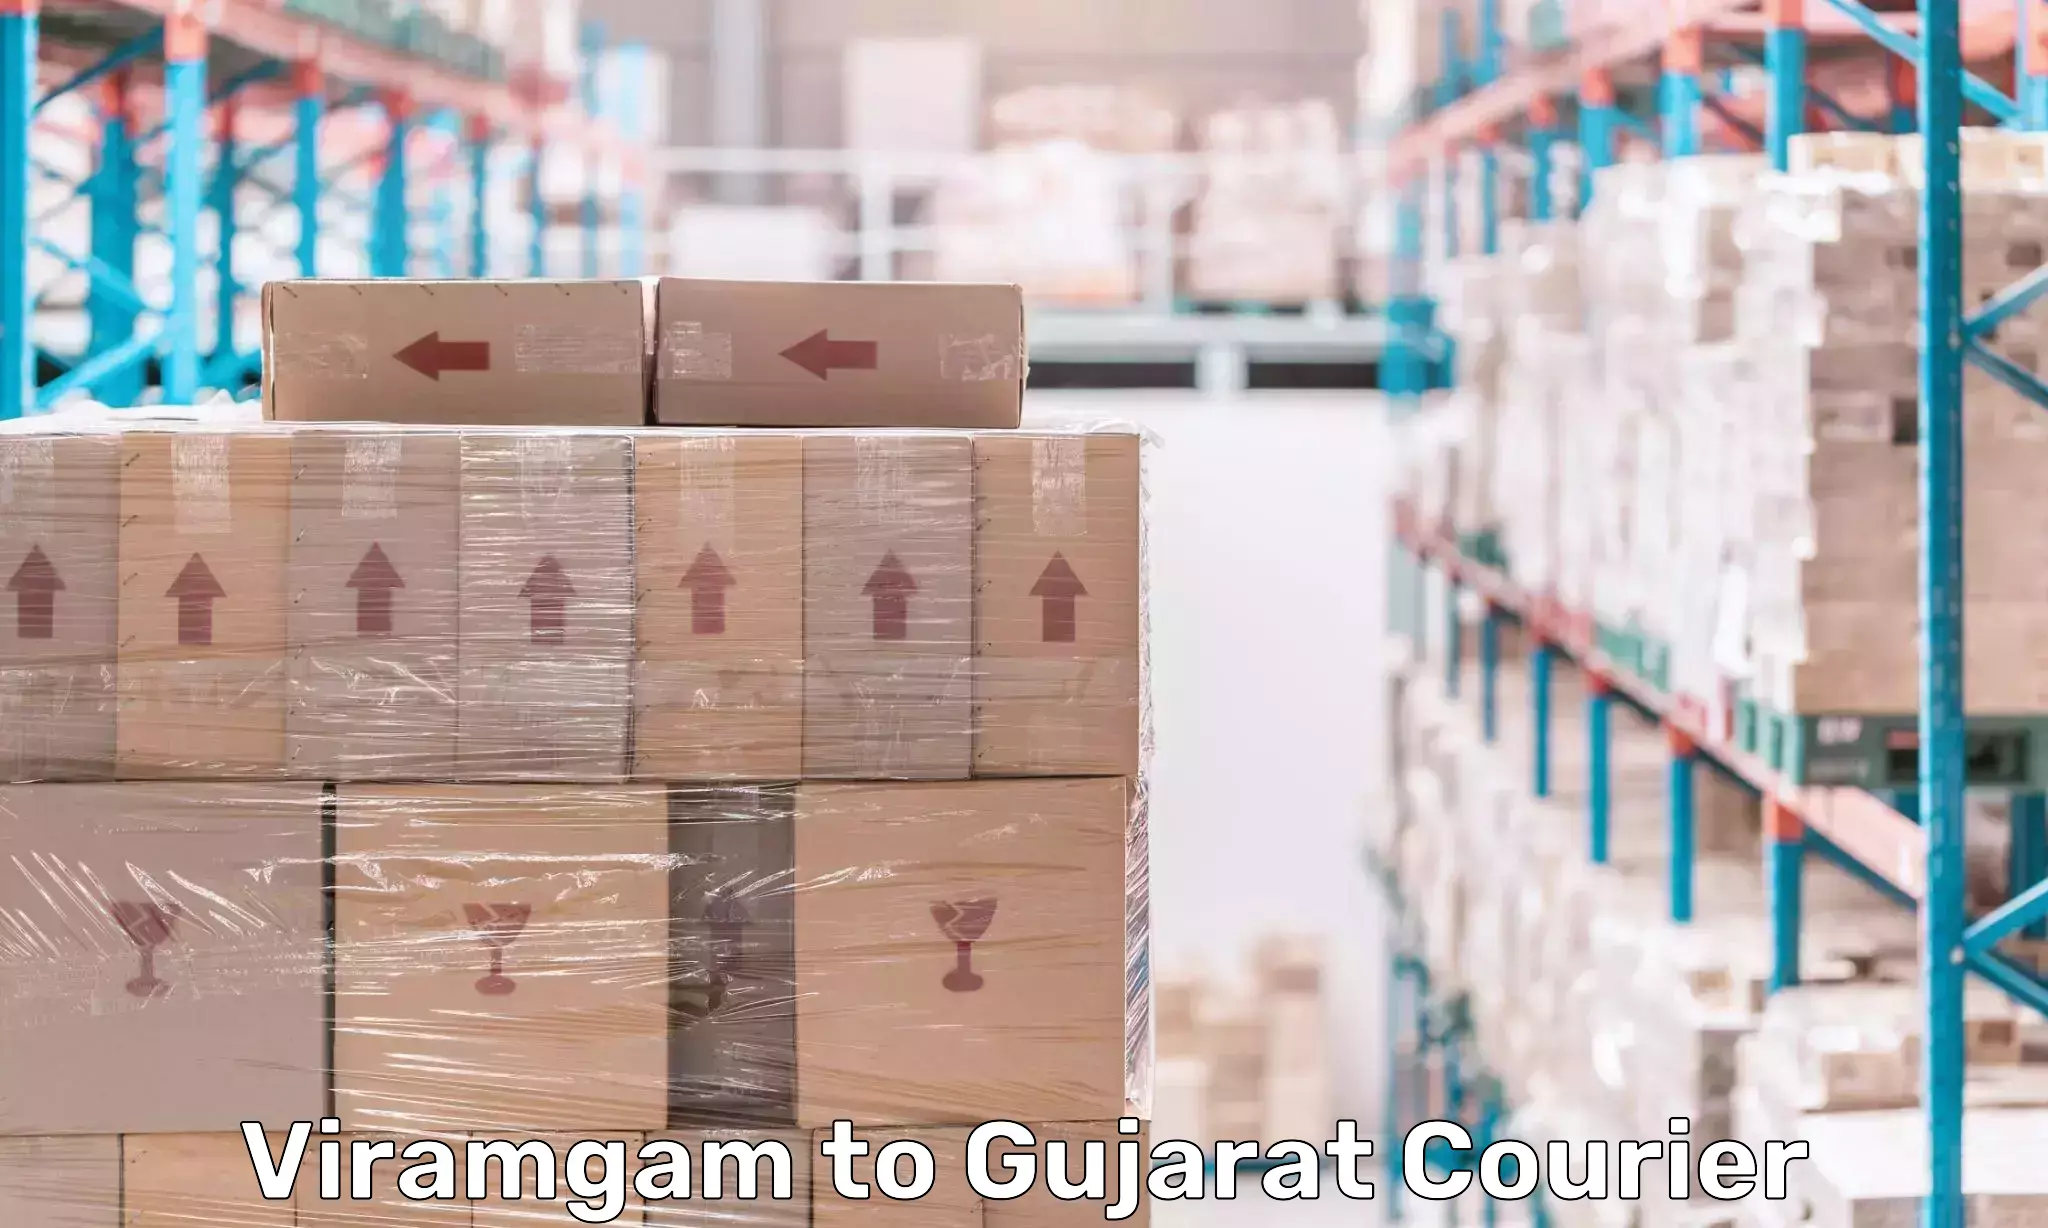 Modern courier technology Viramgam to Gujarat